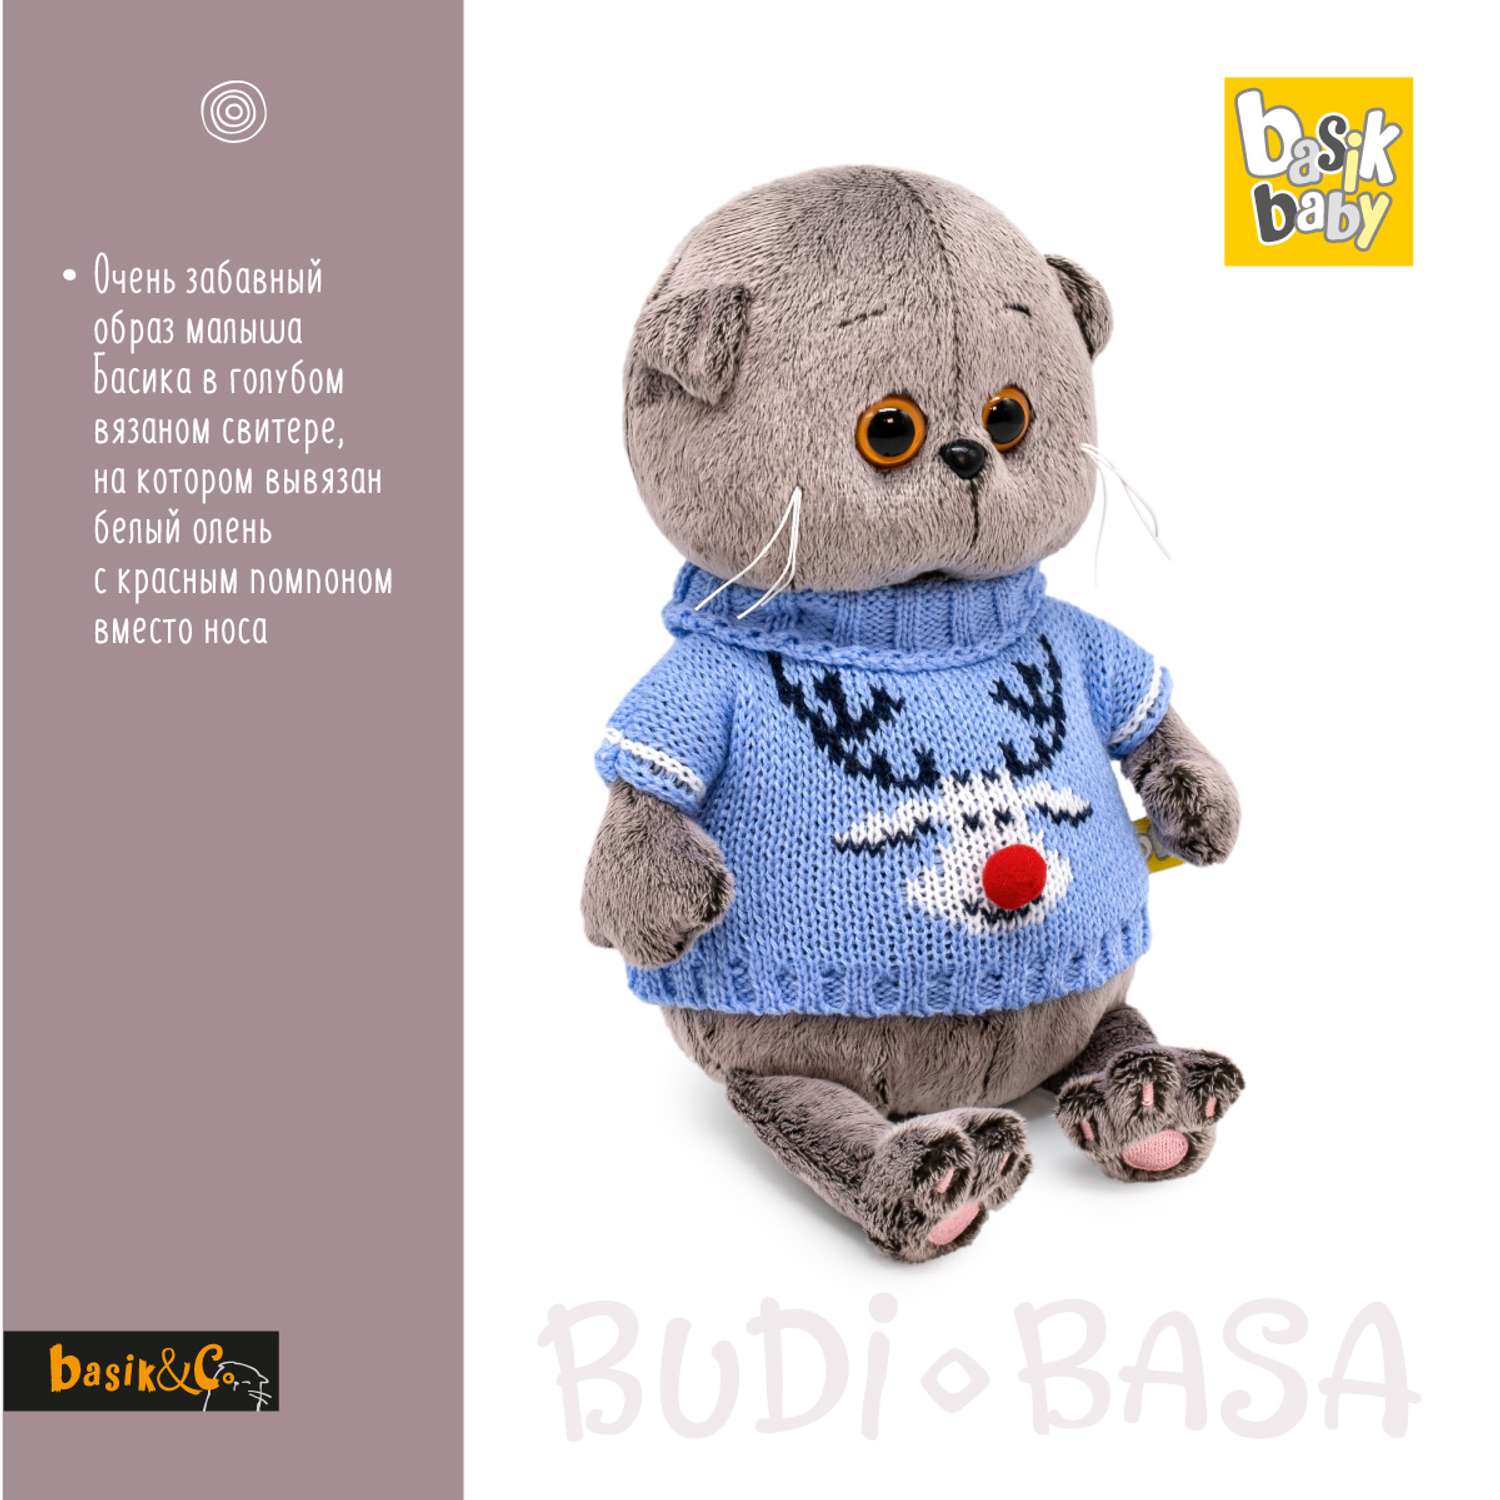 Мягкая игрушка BUDI BASA Басик BABY в свитере с оленем 20 см BB-130 - фото 2